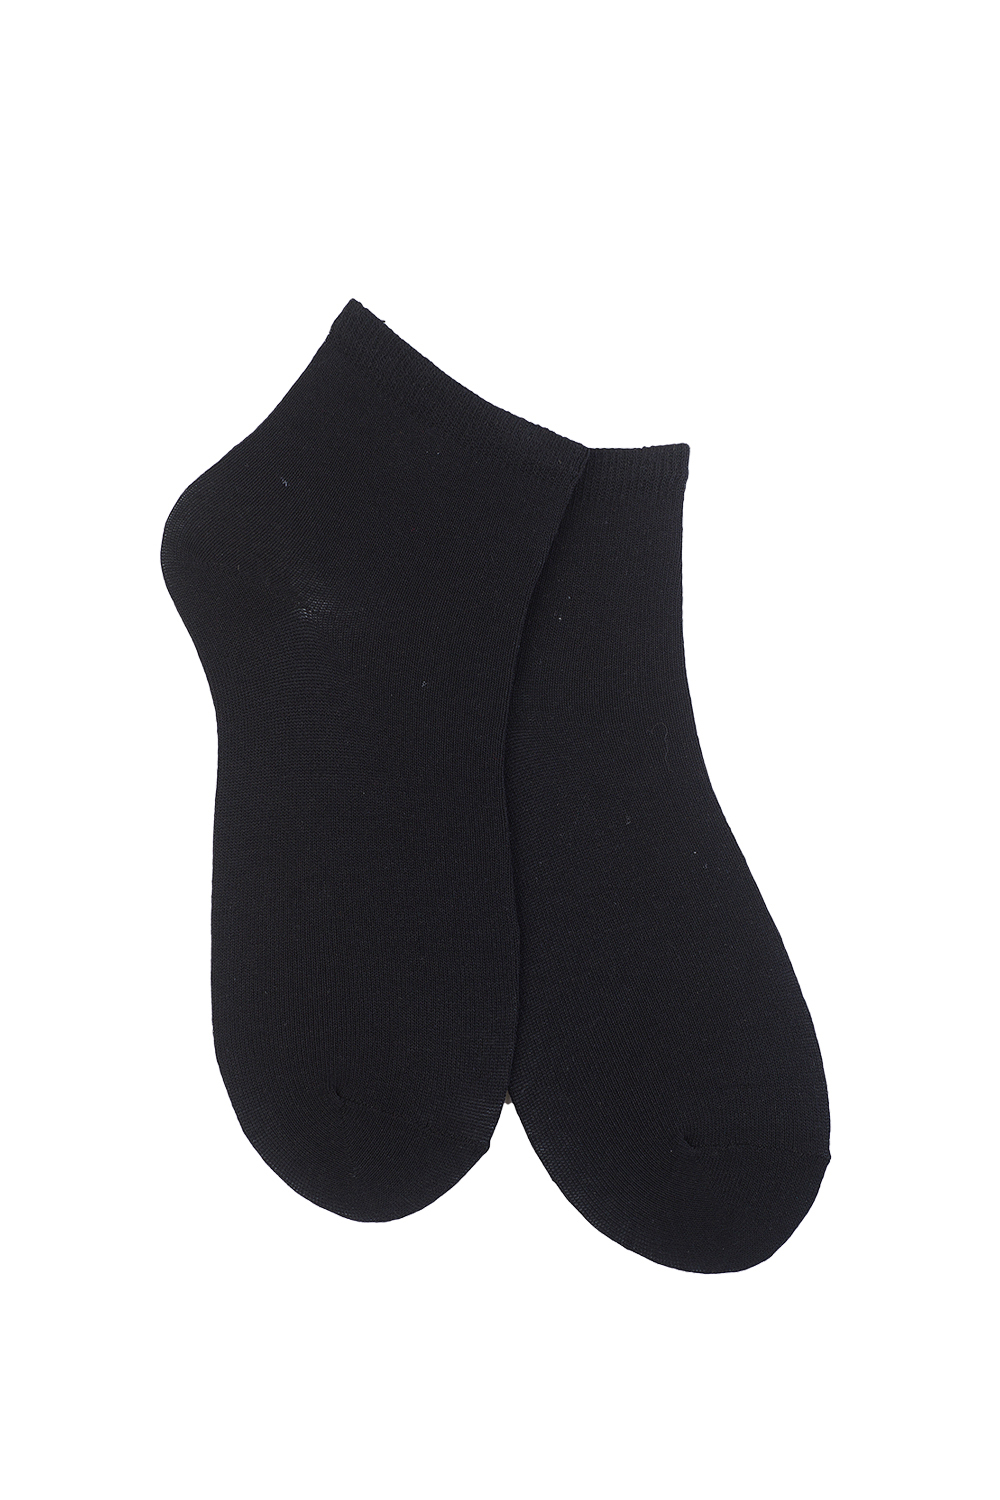 Фото товара 15134, носки женские тонкие черные